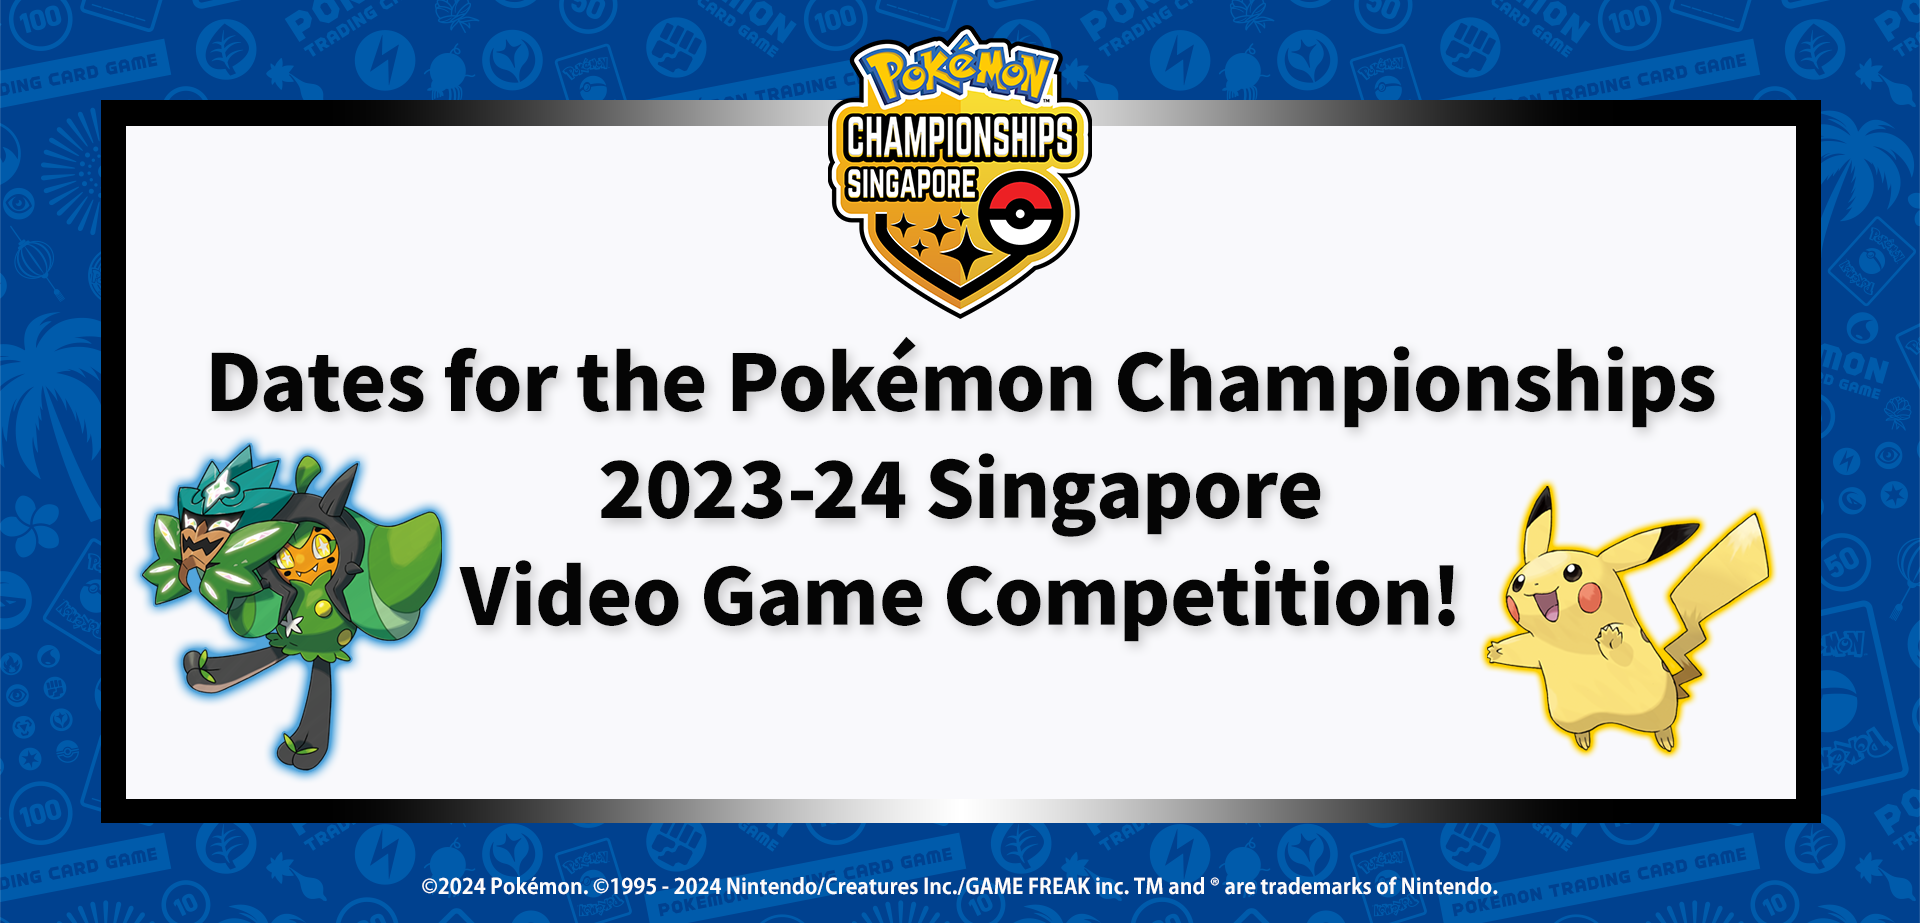 Pokemon_2023-24ChampionsShipVG_SG_info_0321